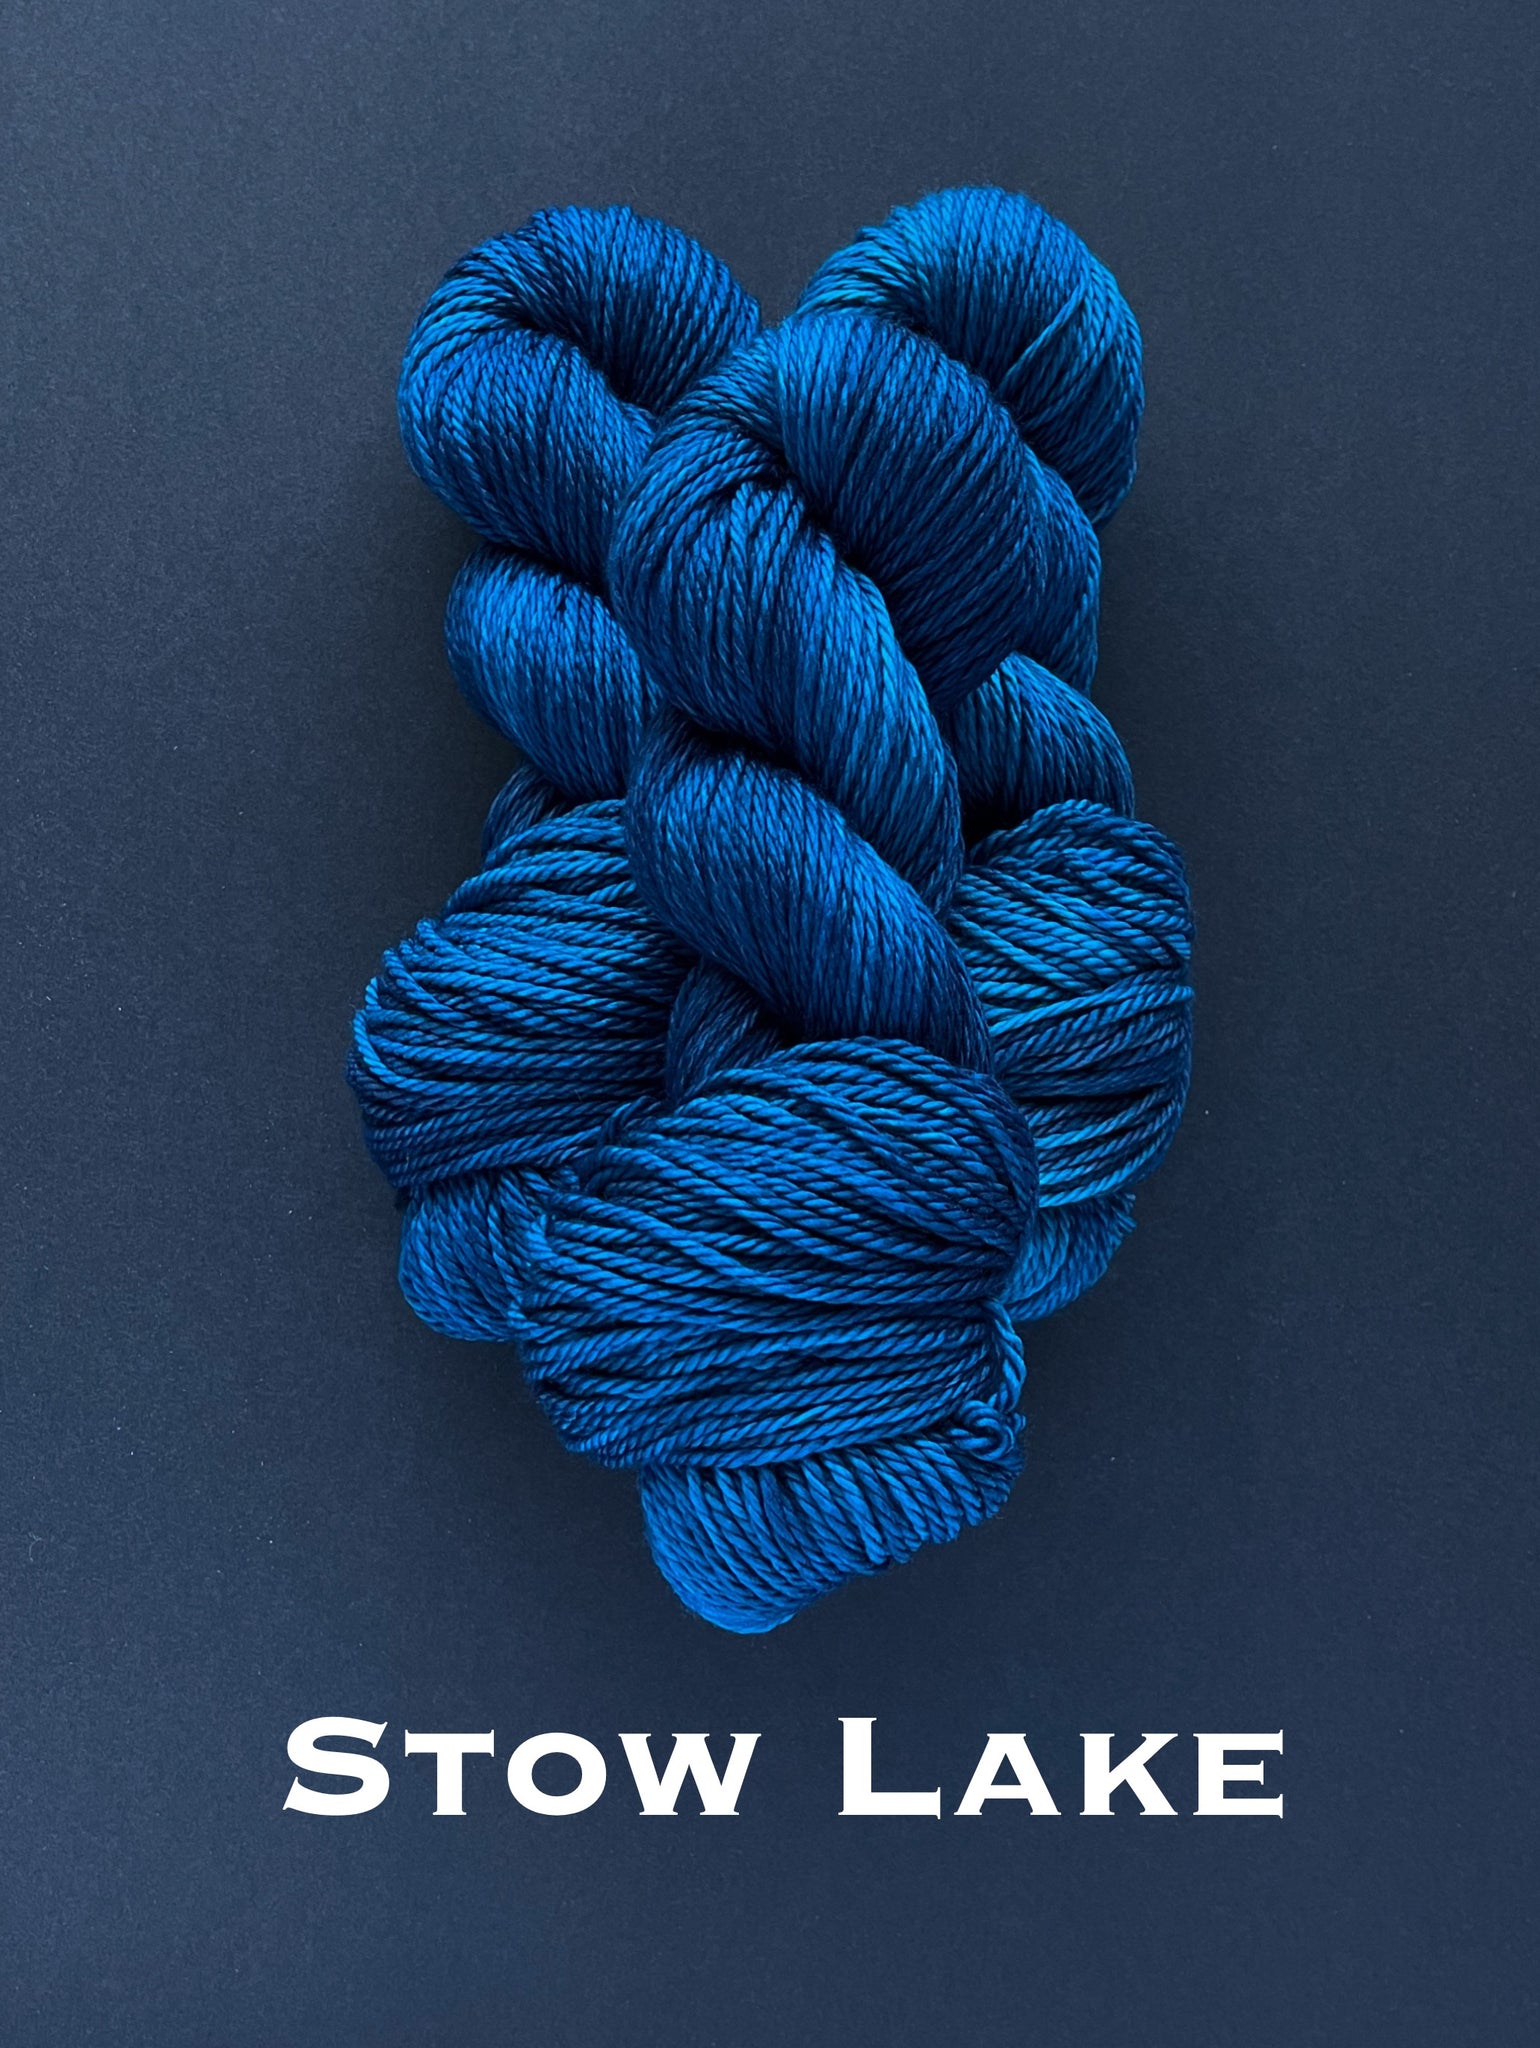 Stow Lake